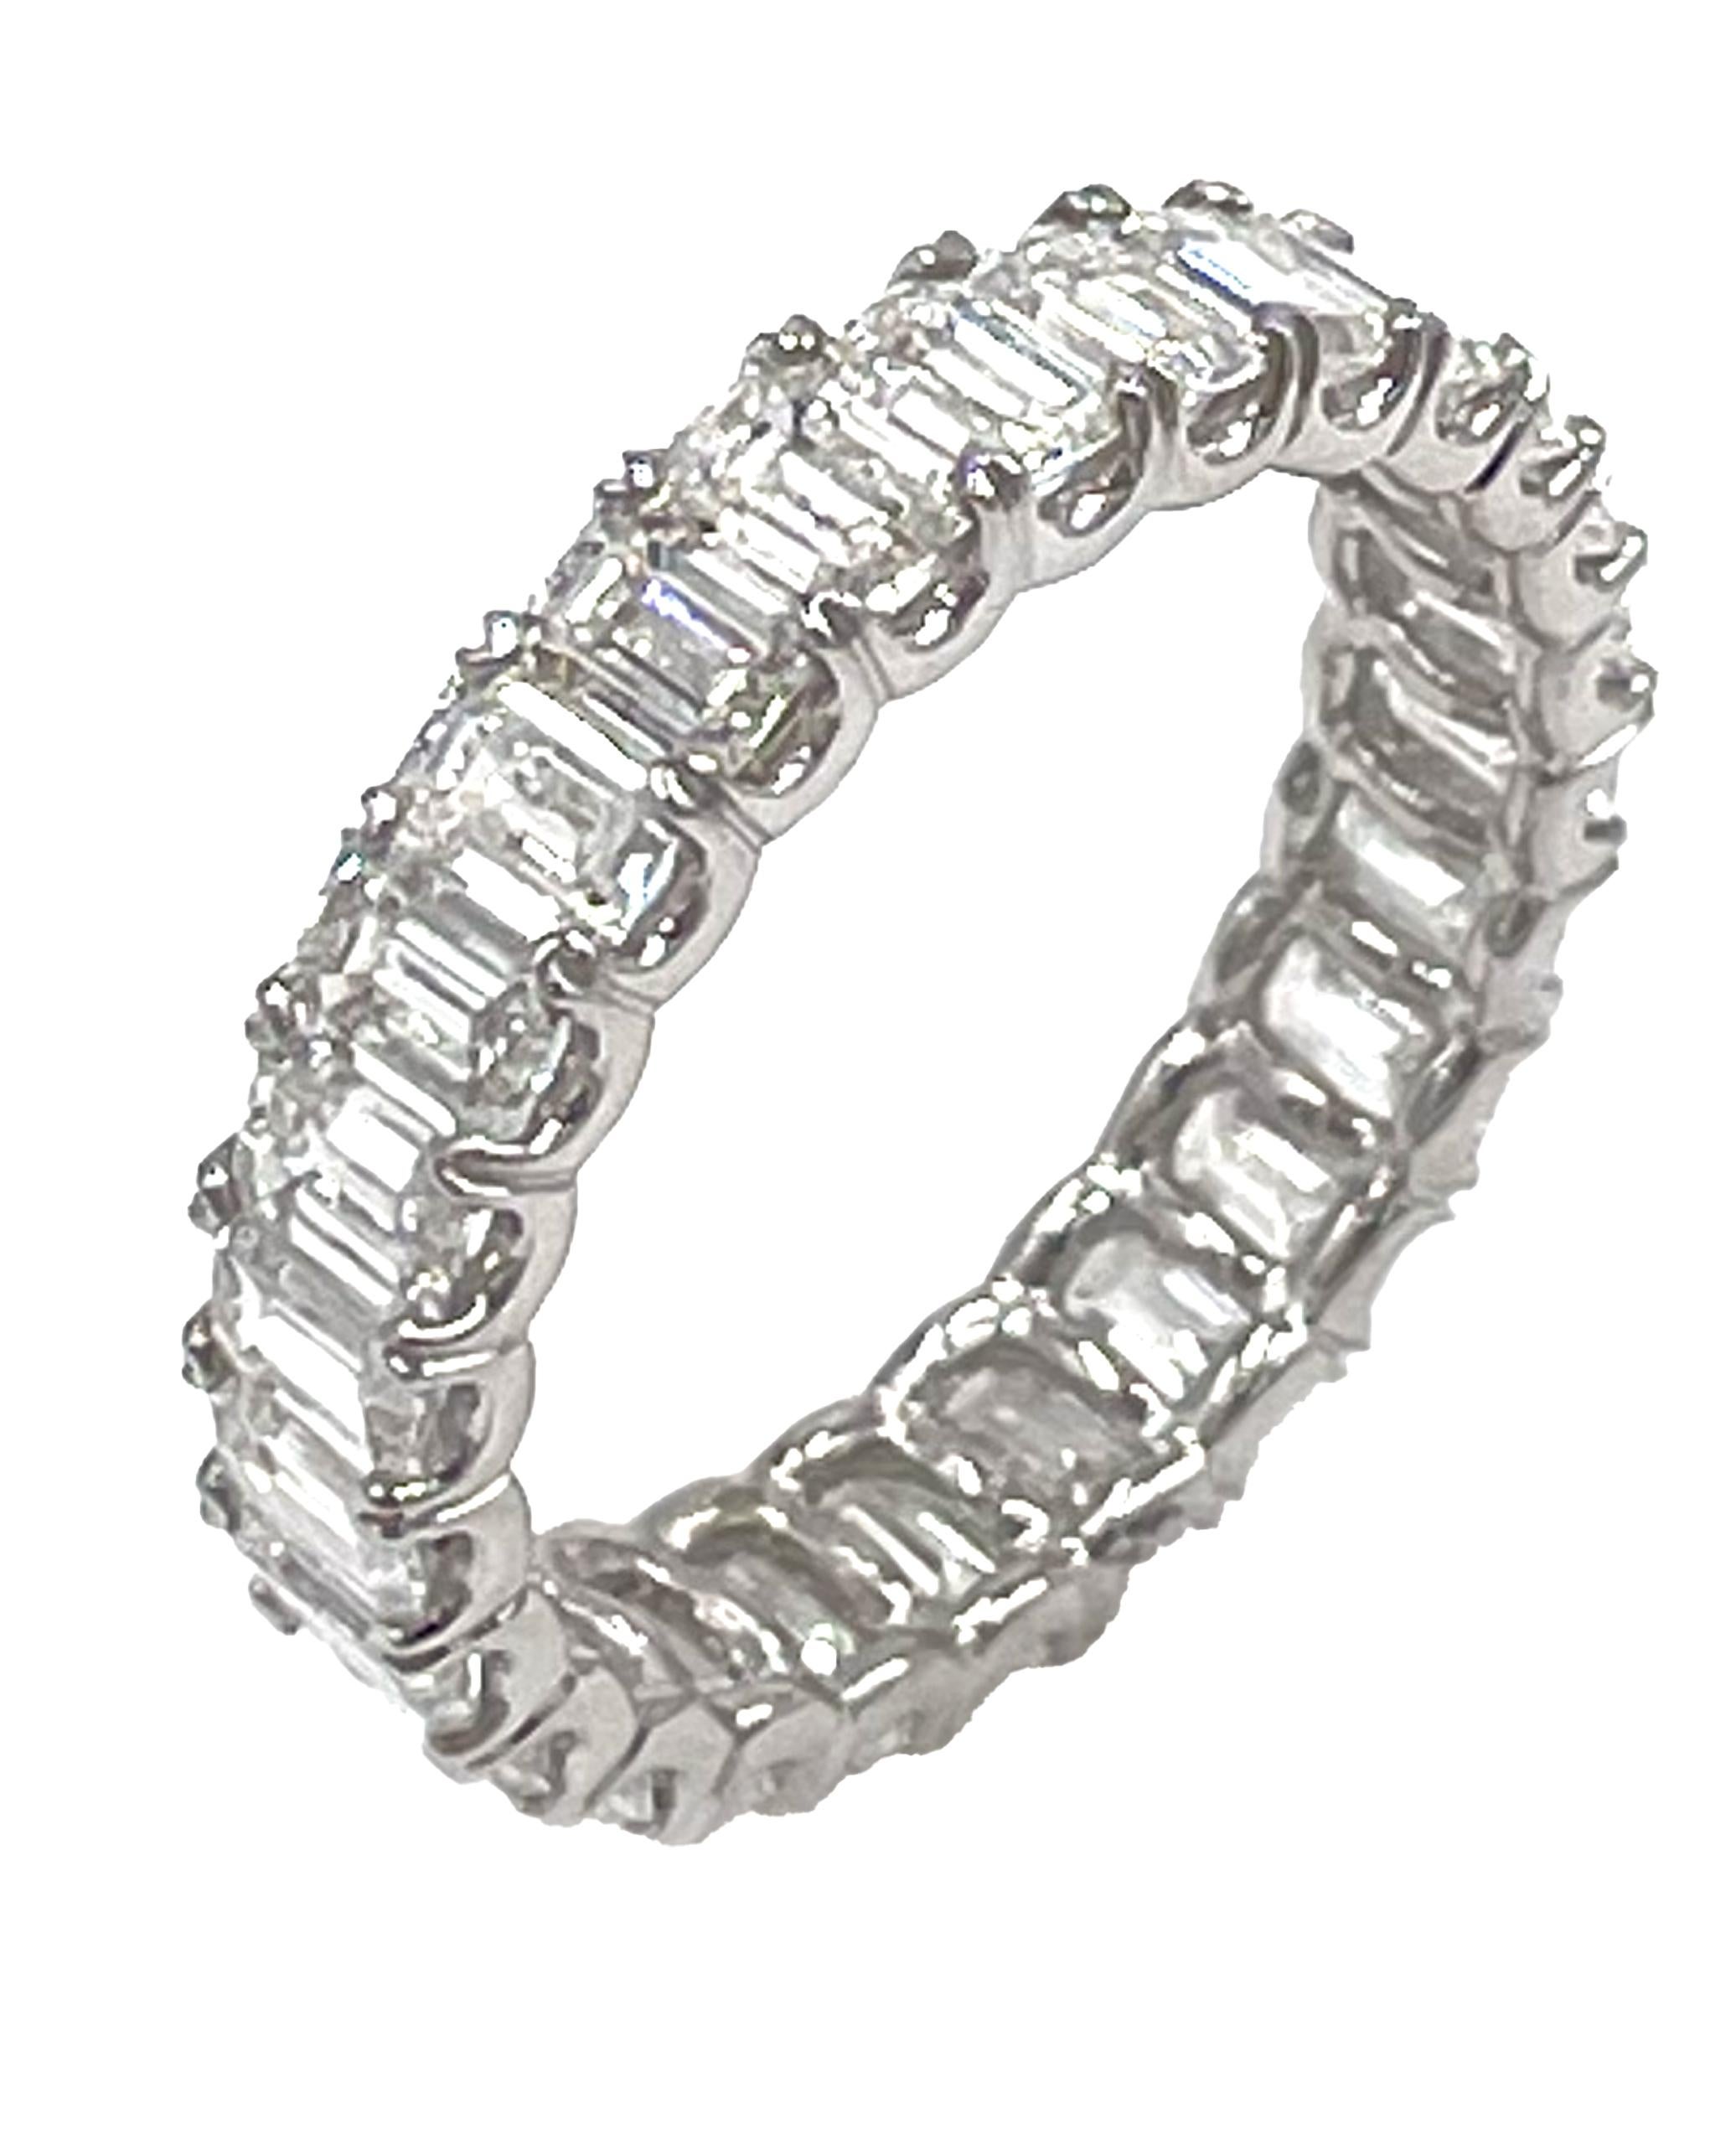 Klassischer Ewigkeitsring aus Platin mit geteilter Zunge, besetzt mit 26 Diamanten im Smaragdschliff von insgesamt 3,53 Karat.

- Diamanten sind F/G Farbe, VVS Klarheit
- Fingergröße: 6.25
- Der Ring ist etwa 4 mm breit